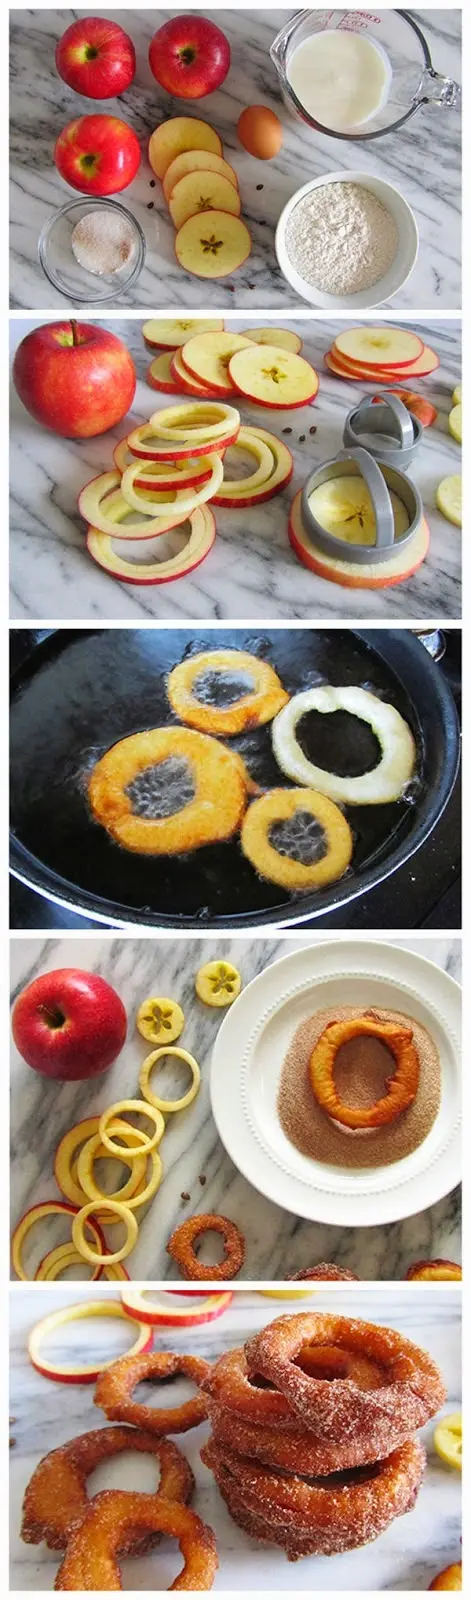 receta de aros de manzana con canela